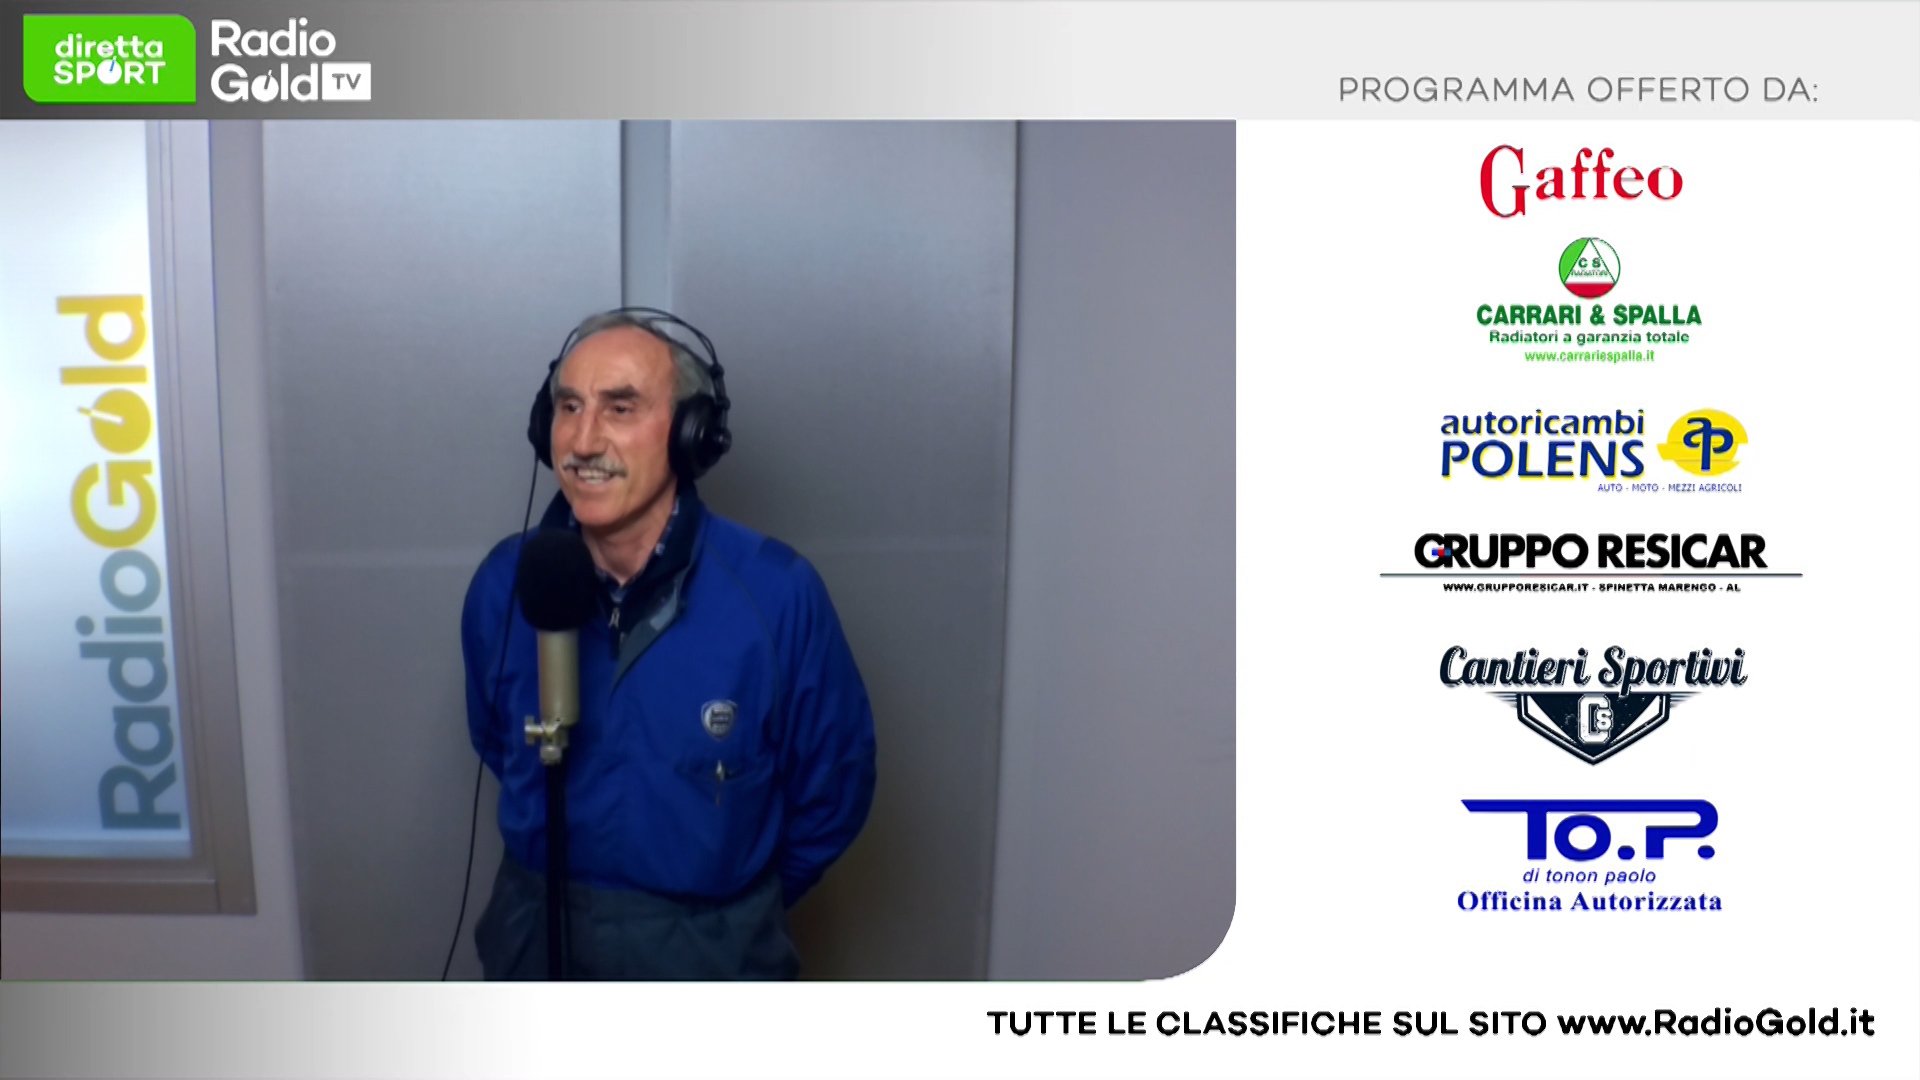 Eccellenza: su Radio Gold Tv il presidente Paolo Tonon